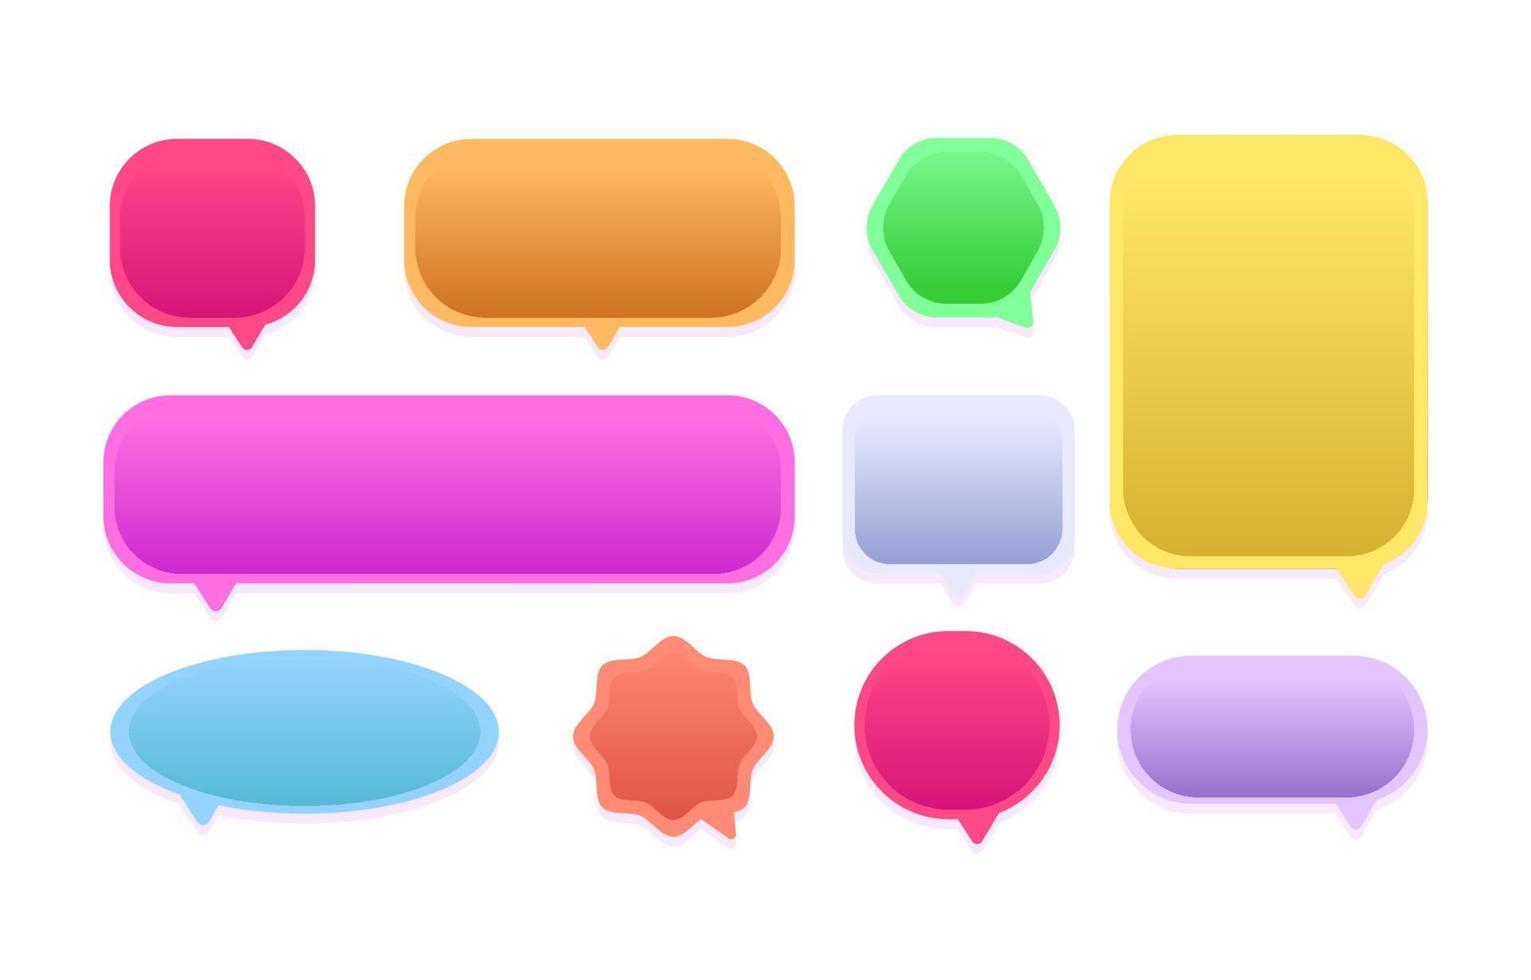 farbenfroher, minimalistischer, mobiler Bubble-Chat mit Farbverlauf vektor